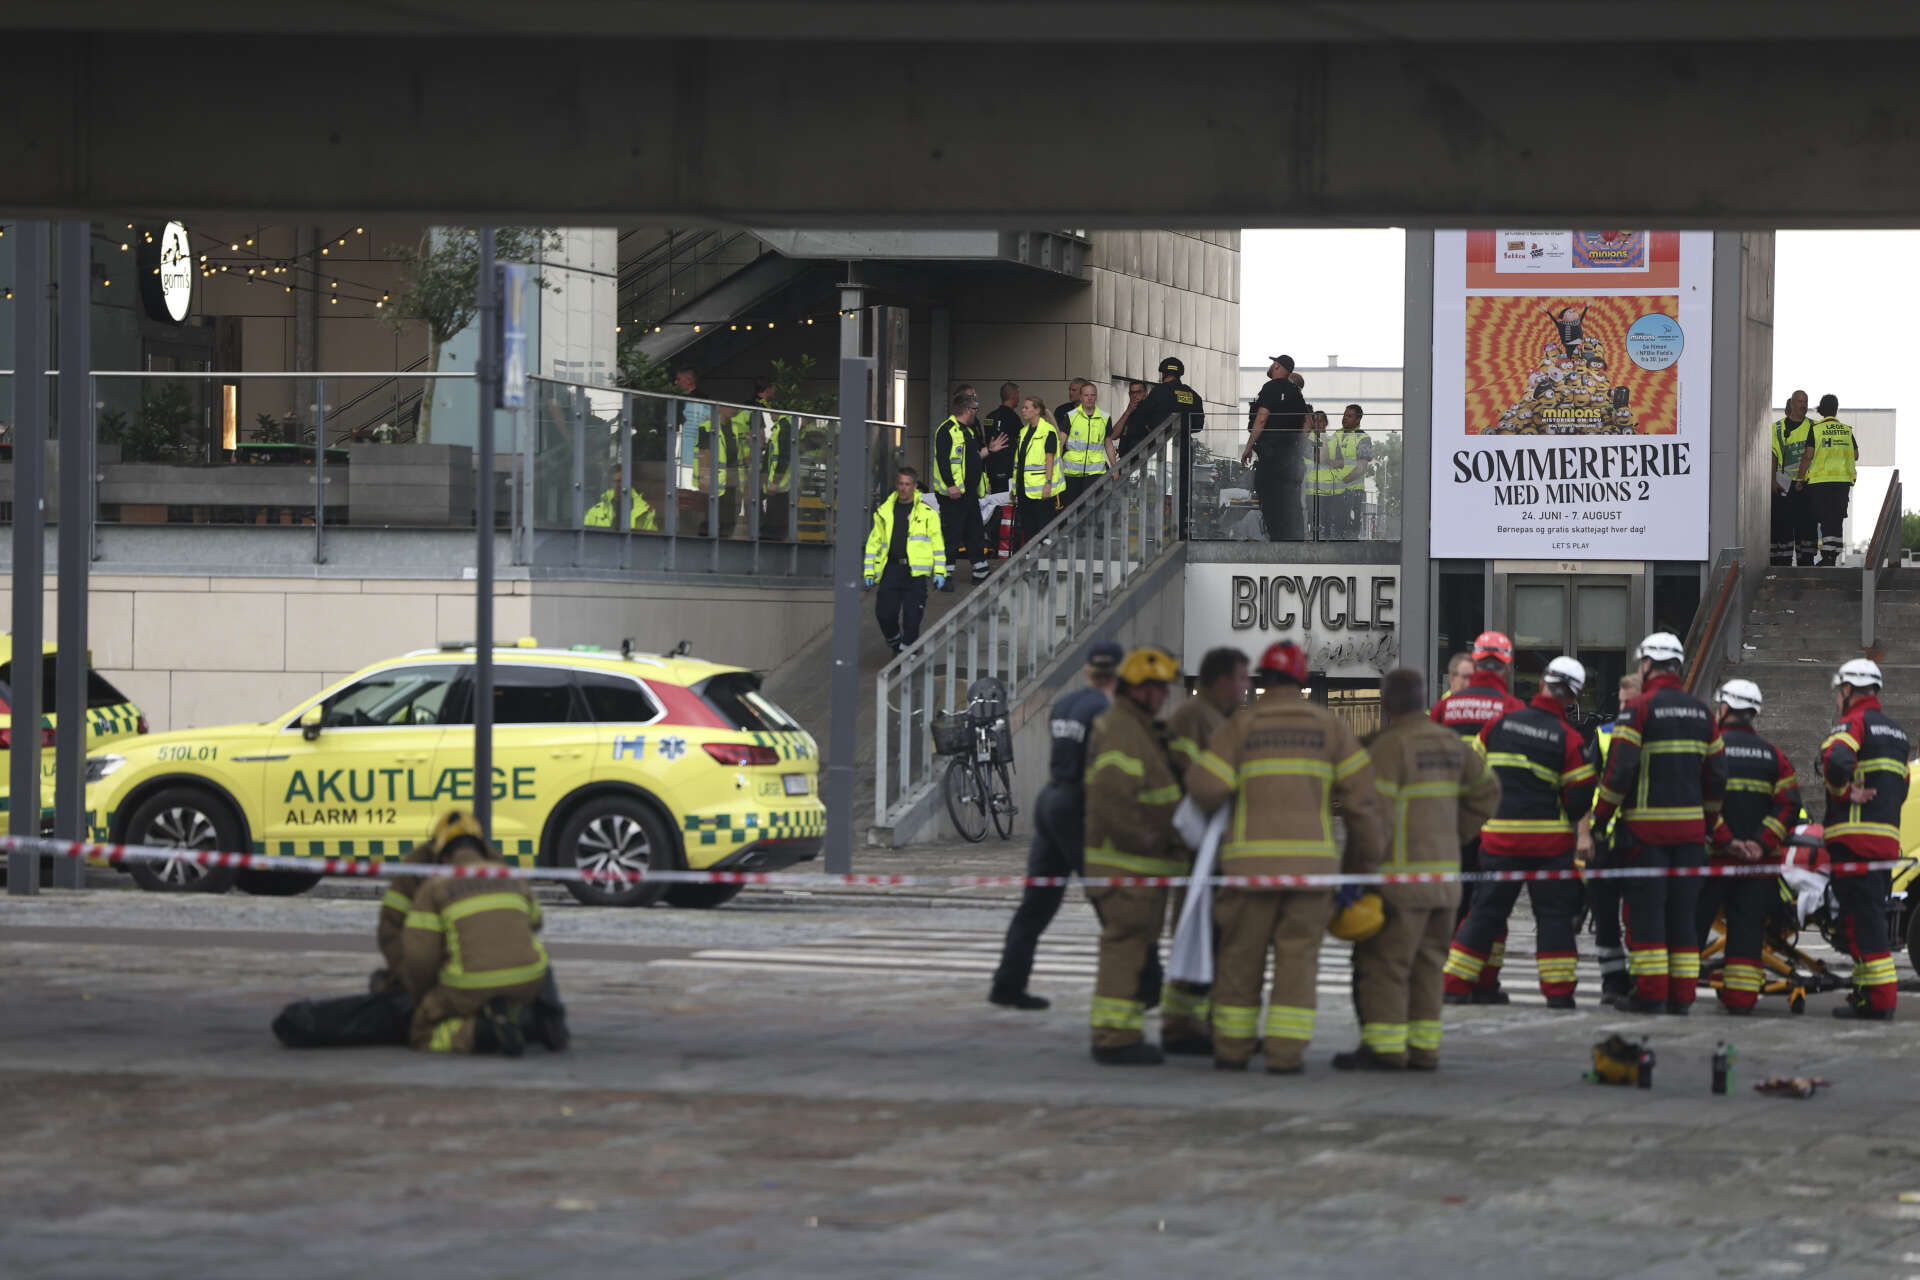 Polis och räddningsfordon i närheten av det köpcentrum i Köpenhamn där flera personer sköts ihjäl på söndagskvällen.